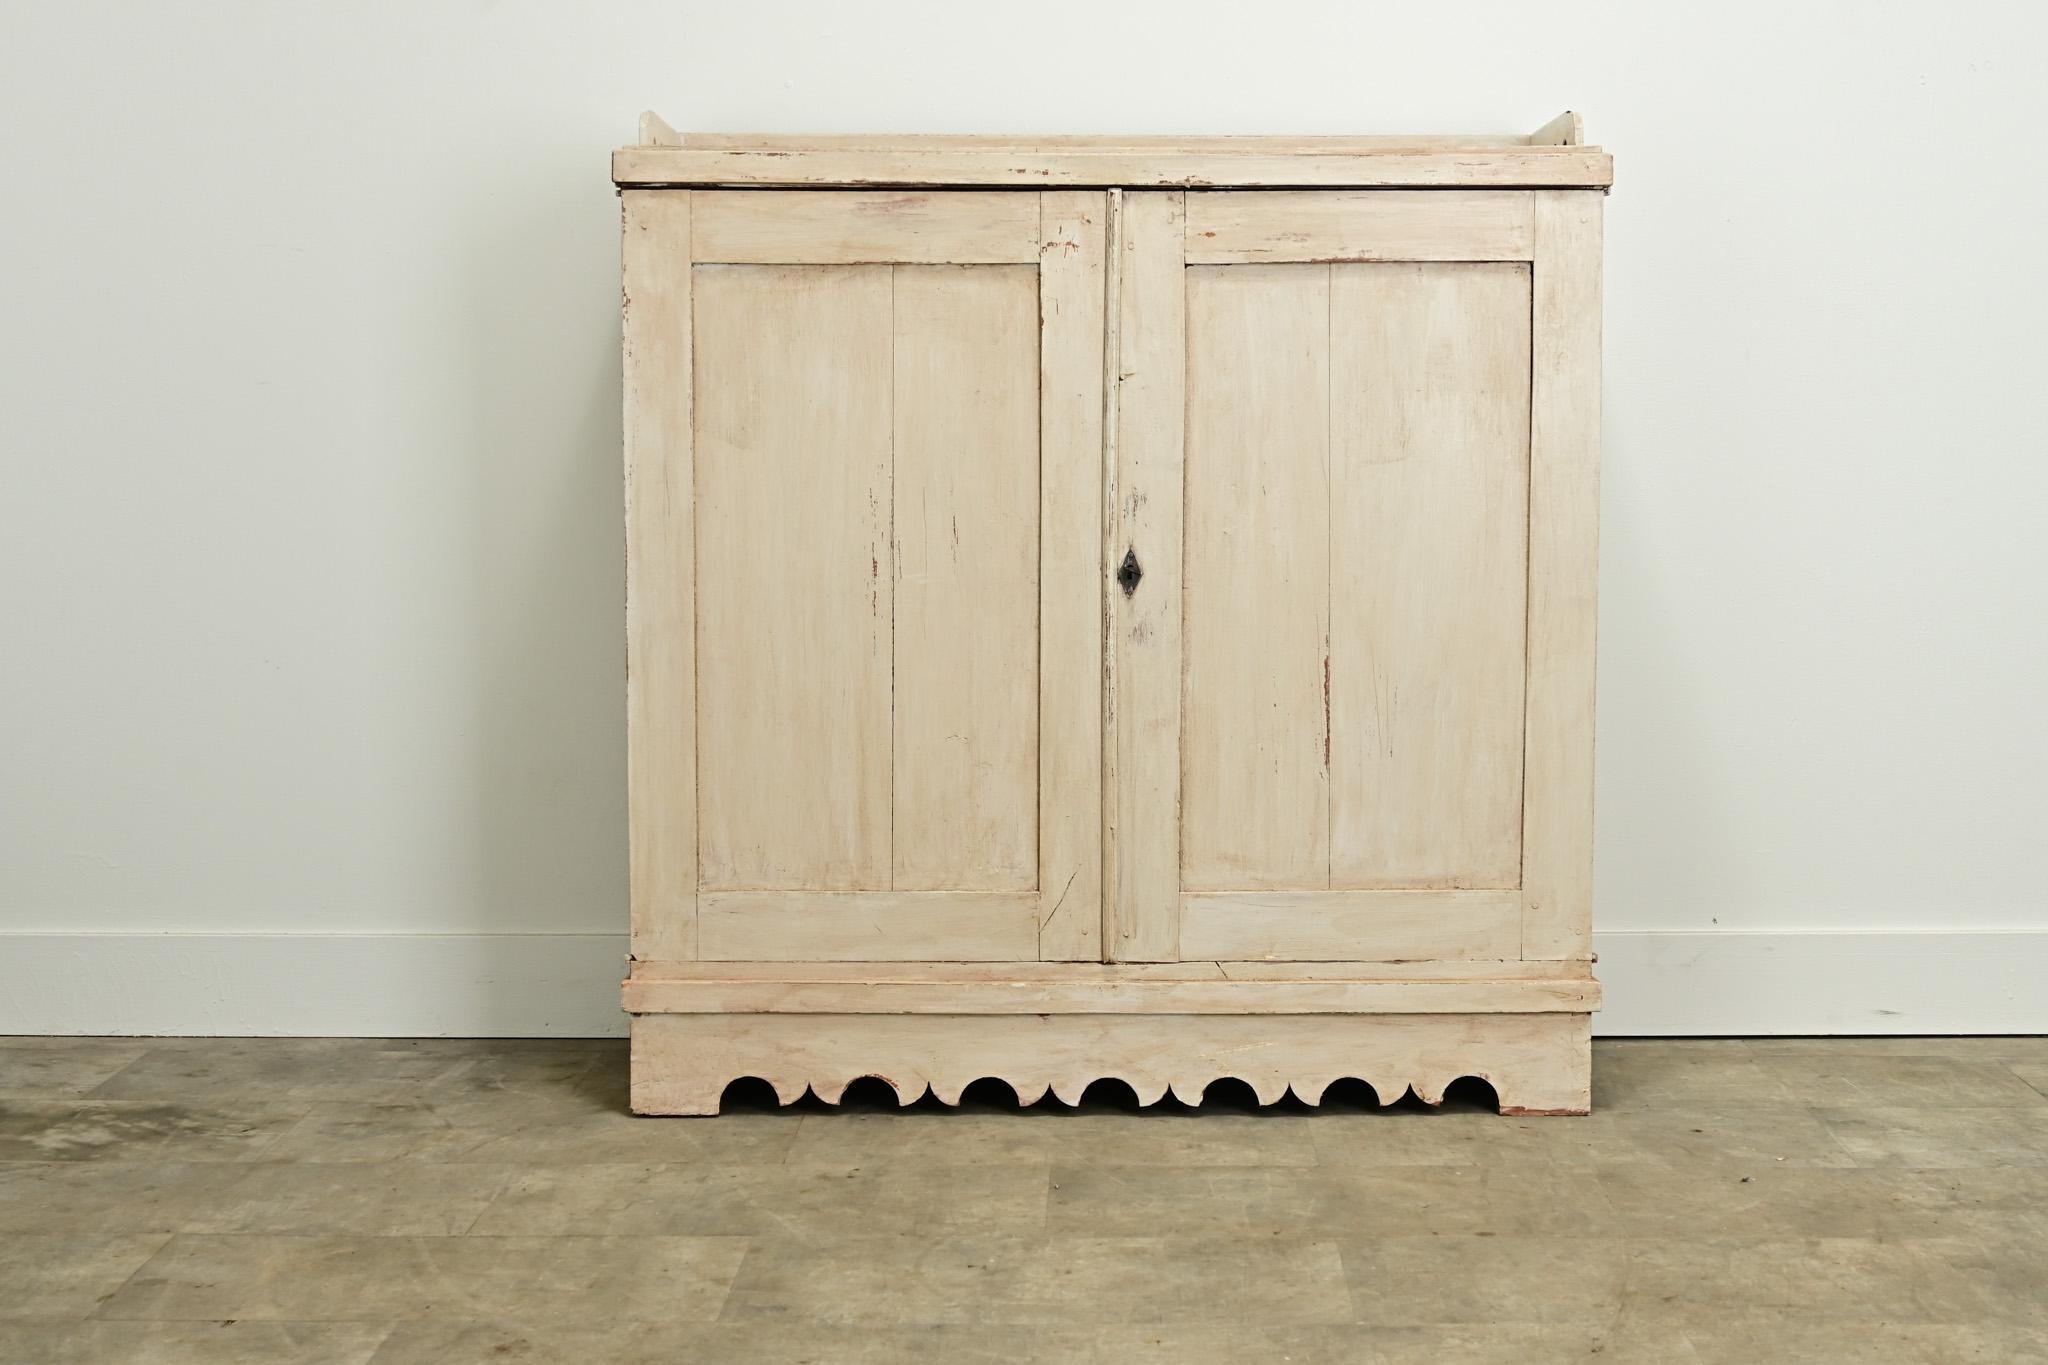 Ein bemalter Kieferschrank aus Schweden um 1800. Dieser Schrank hat seine ursprüngliche, abgenutzte Lackierung und eine durchbrochene Holzgalerie über einem Paar getäfelter Türen. Der Innenraum ist mit zwei Schubladen und zwei festen Einlegeböden